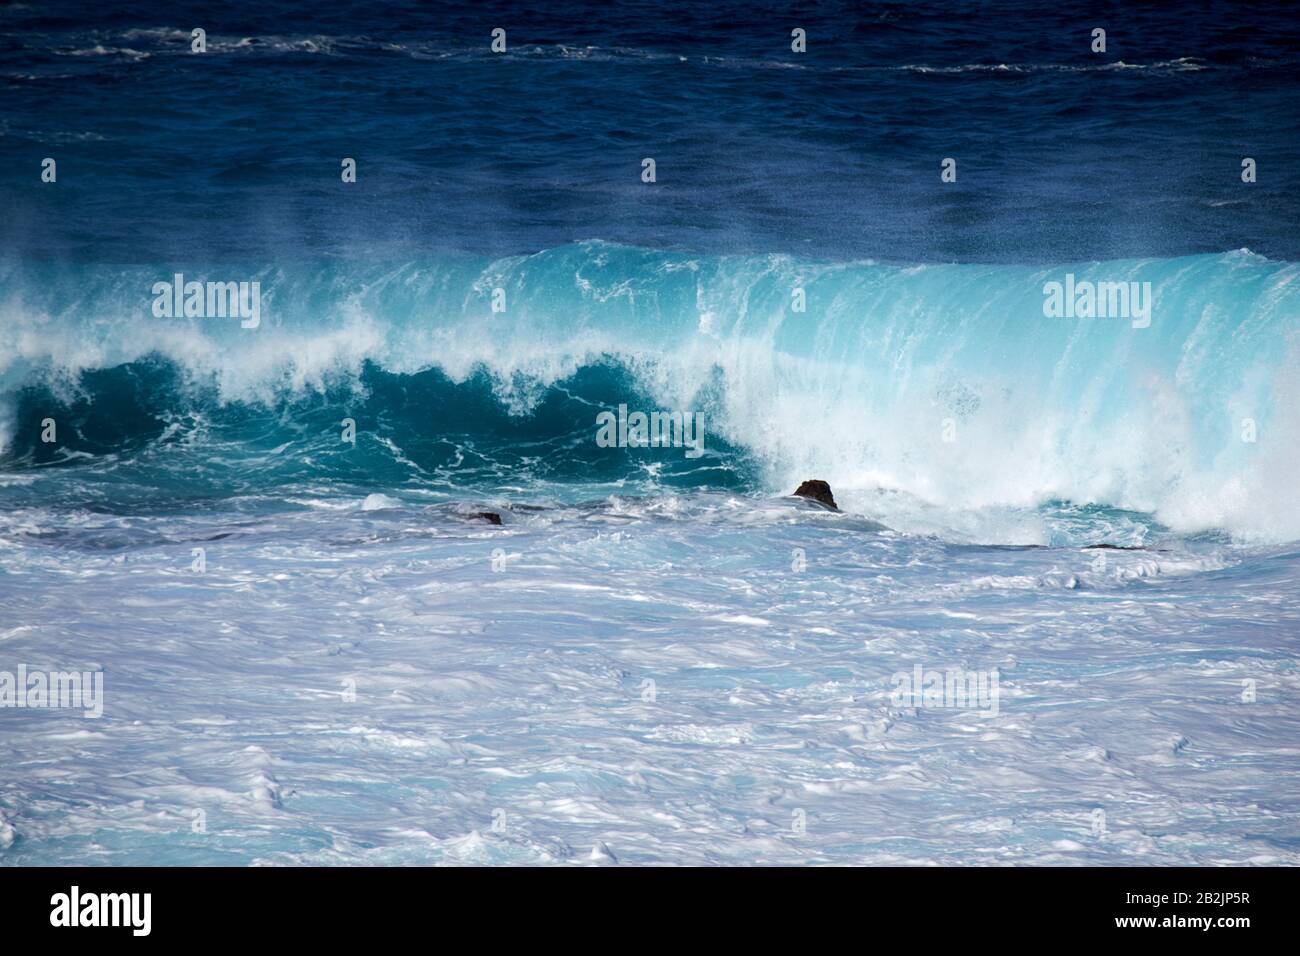 Des vagues bleues vertes qui se brisent s'écrasent dans la mer au large des côtes de Lanzarote îles canaries espagne Banque D'Images